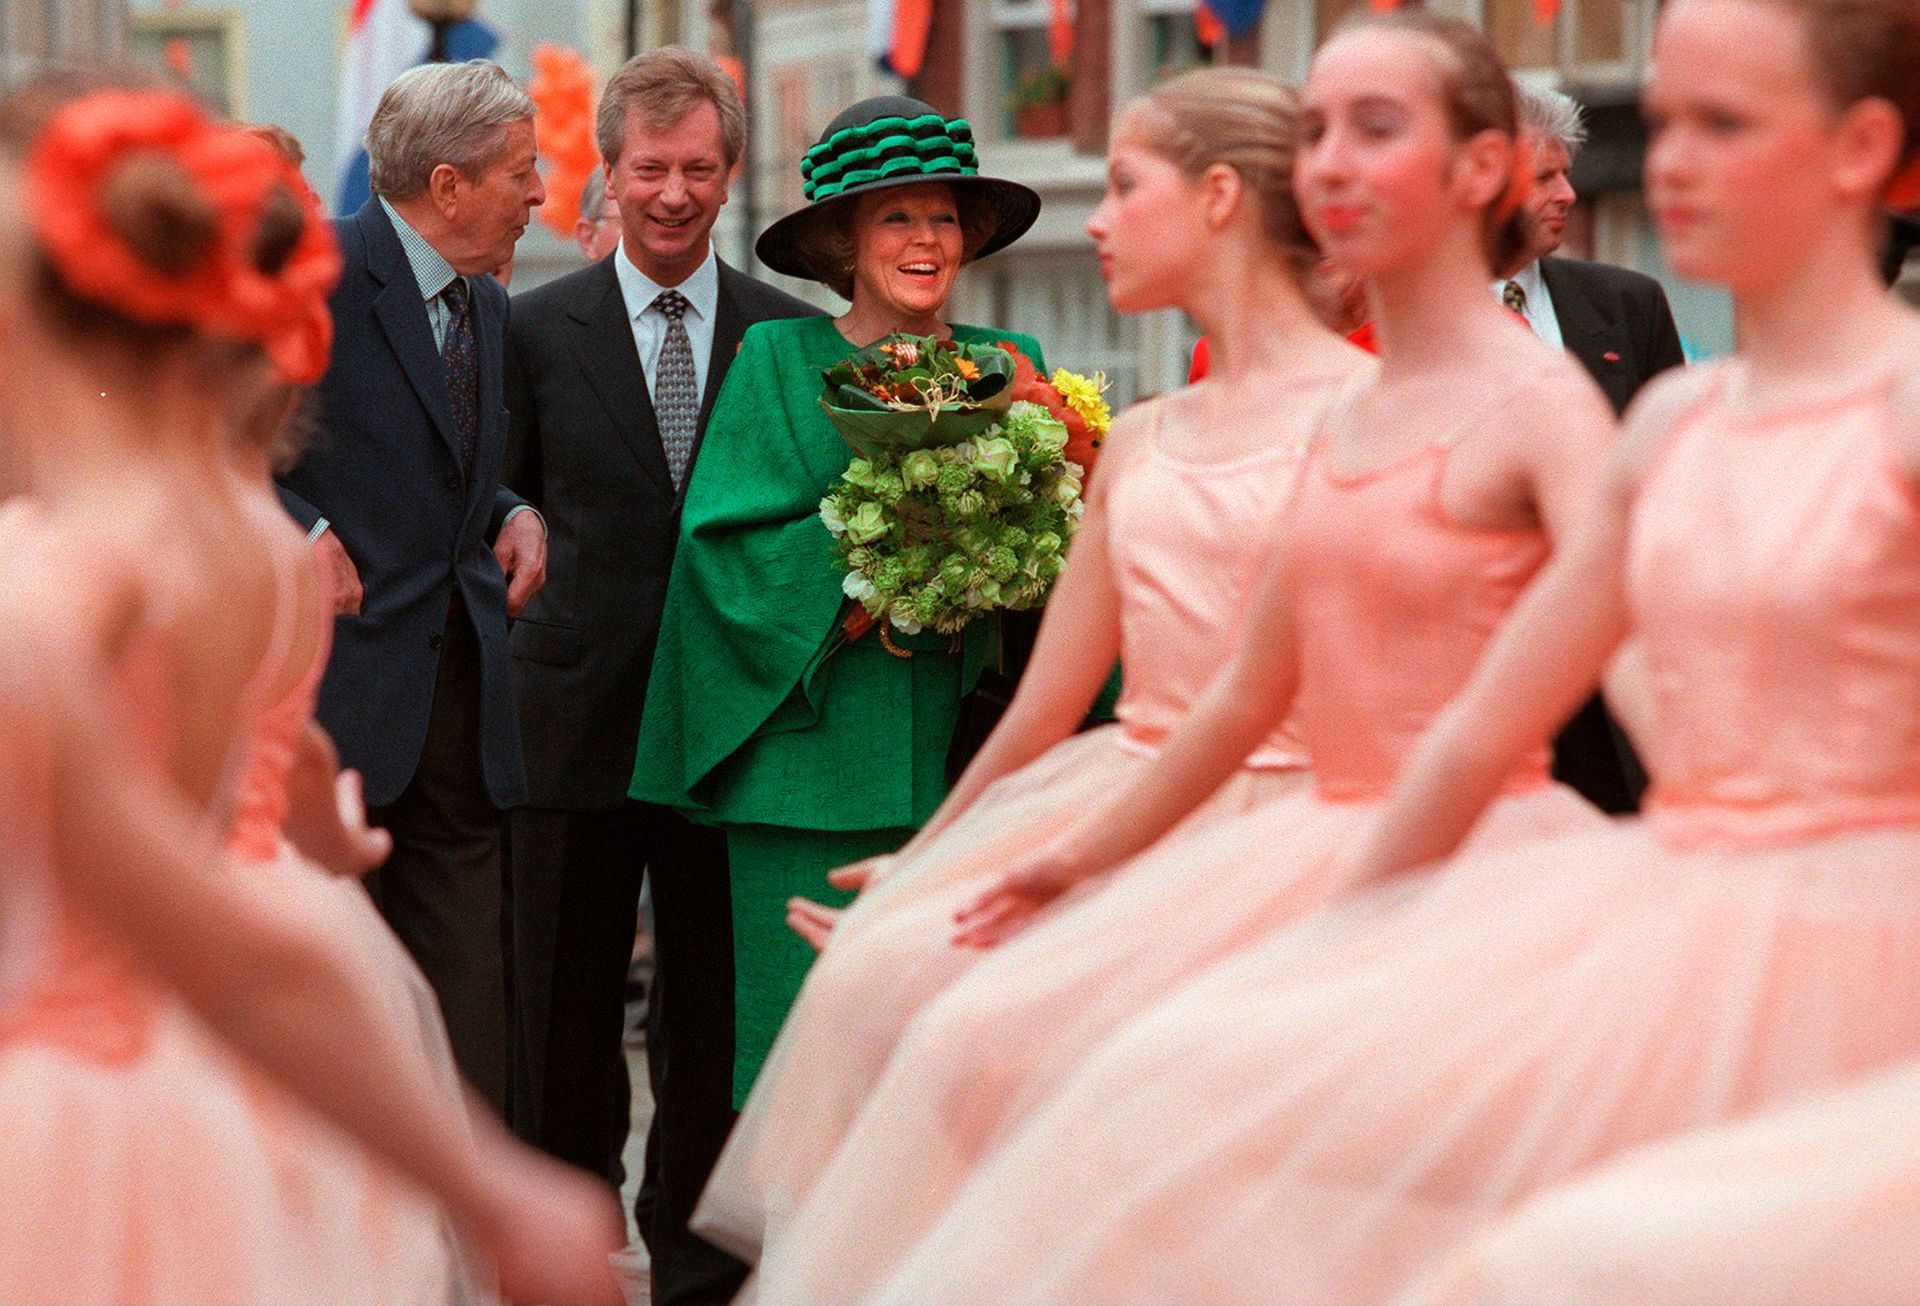 Koninginnedag 1998 in Doesburg en Zutphen.De koningin en prins Claus bekijken een groepje met